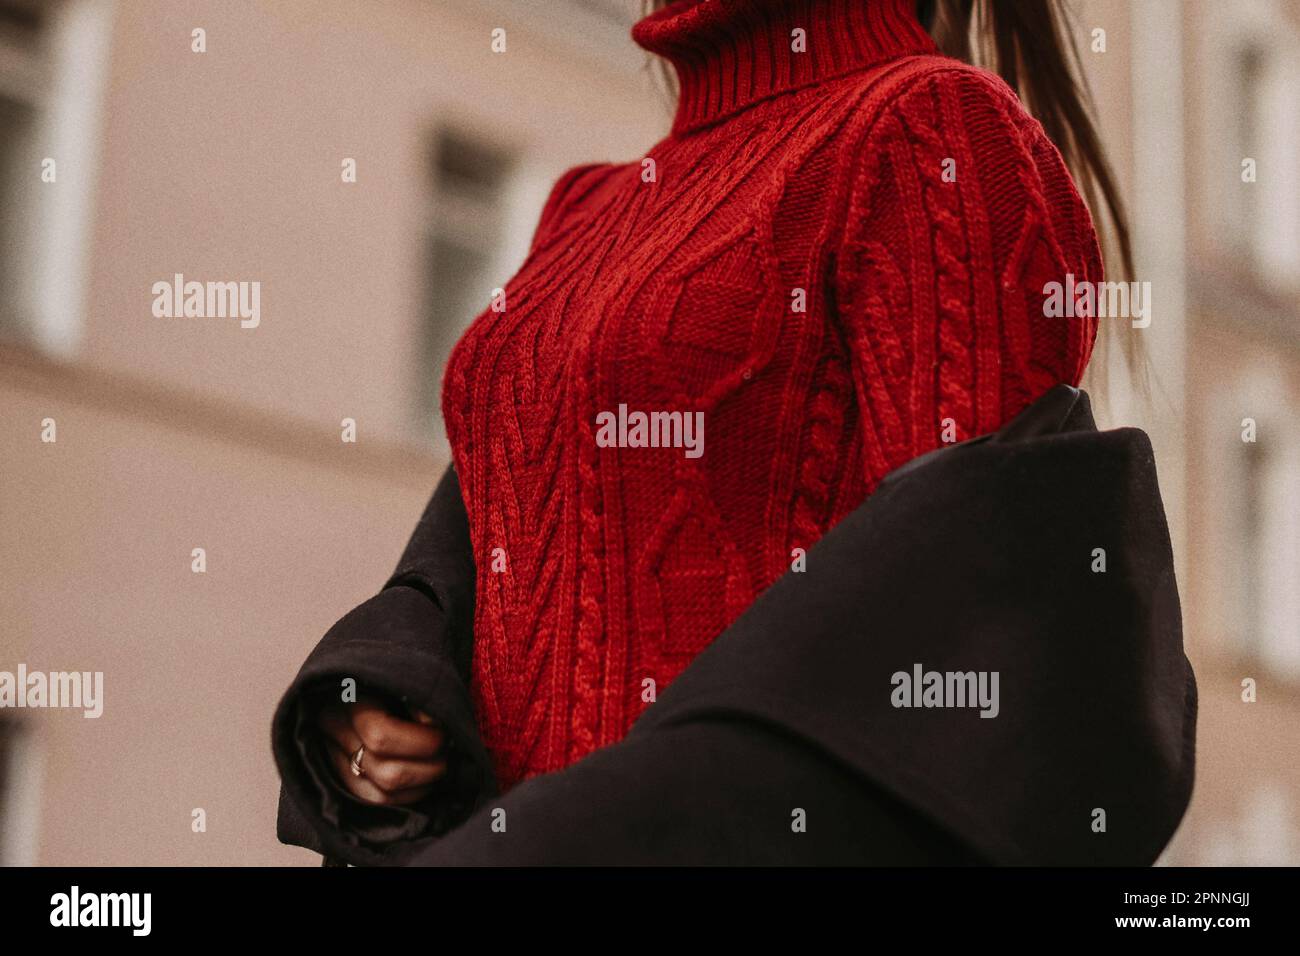 Weibliche Figur im roten, warmen Strickpullover und schwarzen Mantel. Porträt im Freien bei Tageslicht. Stoffkonzept im Herbst-Winter-Straßenstil Stockfoto